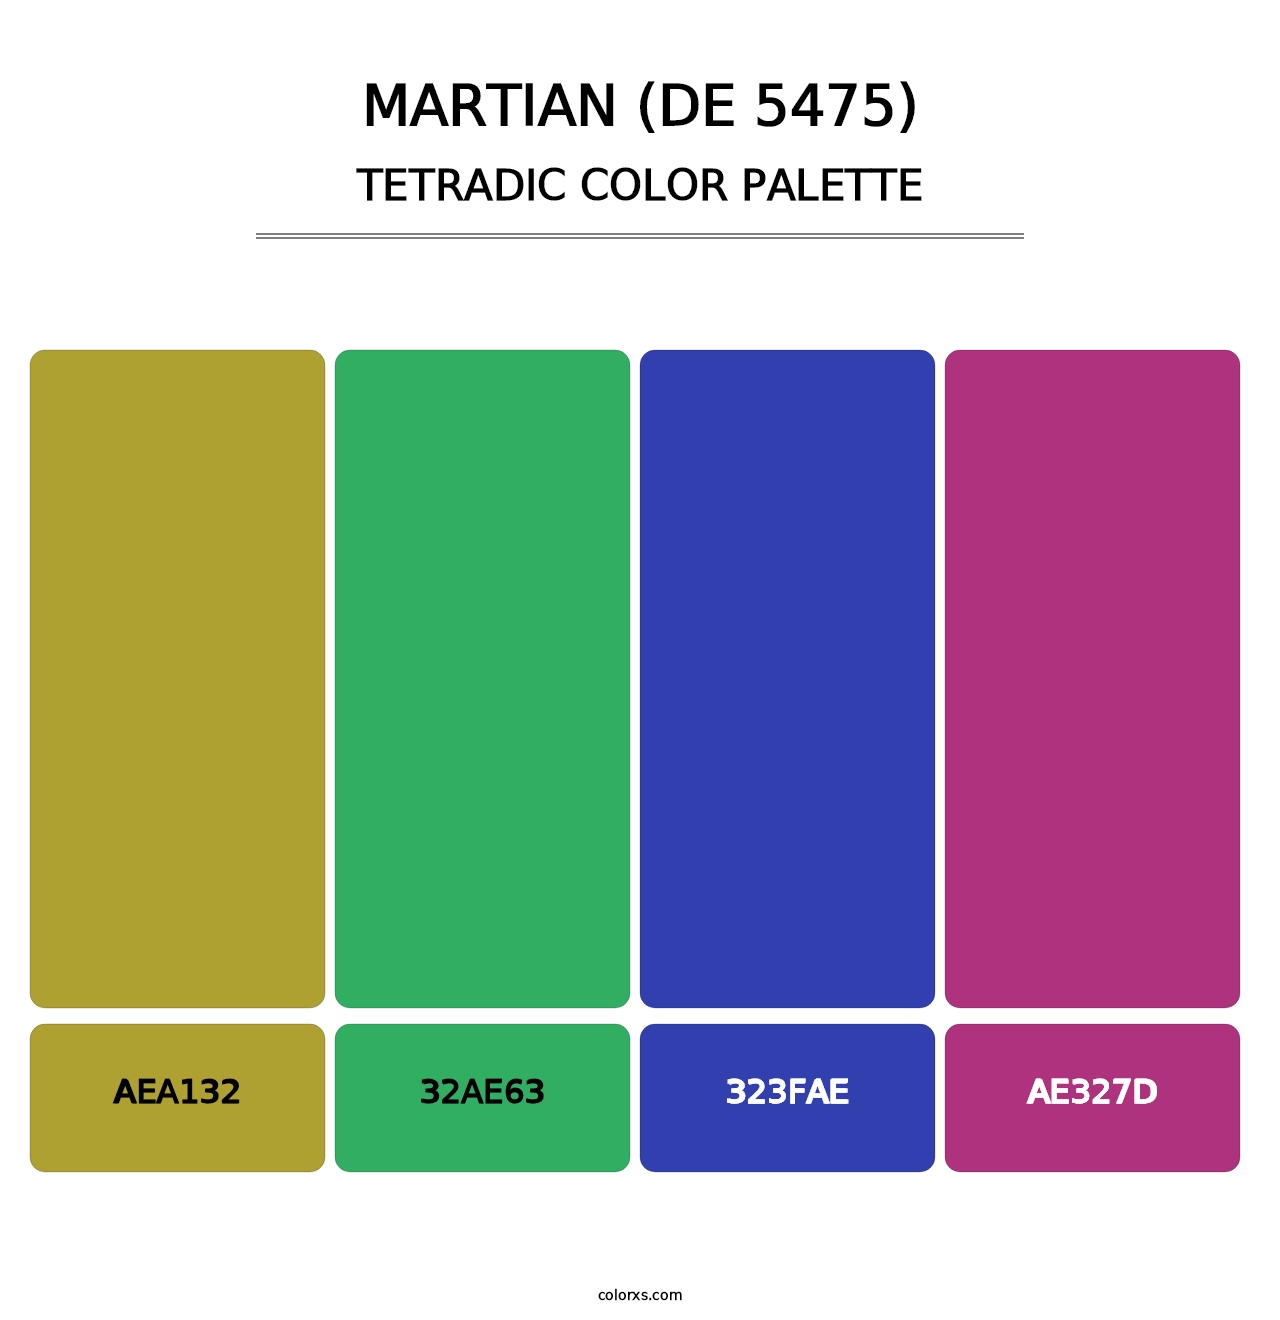 Martian (DE 5475) - Tetradic Color Palette